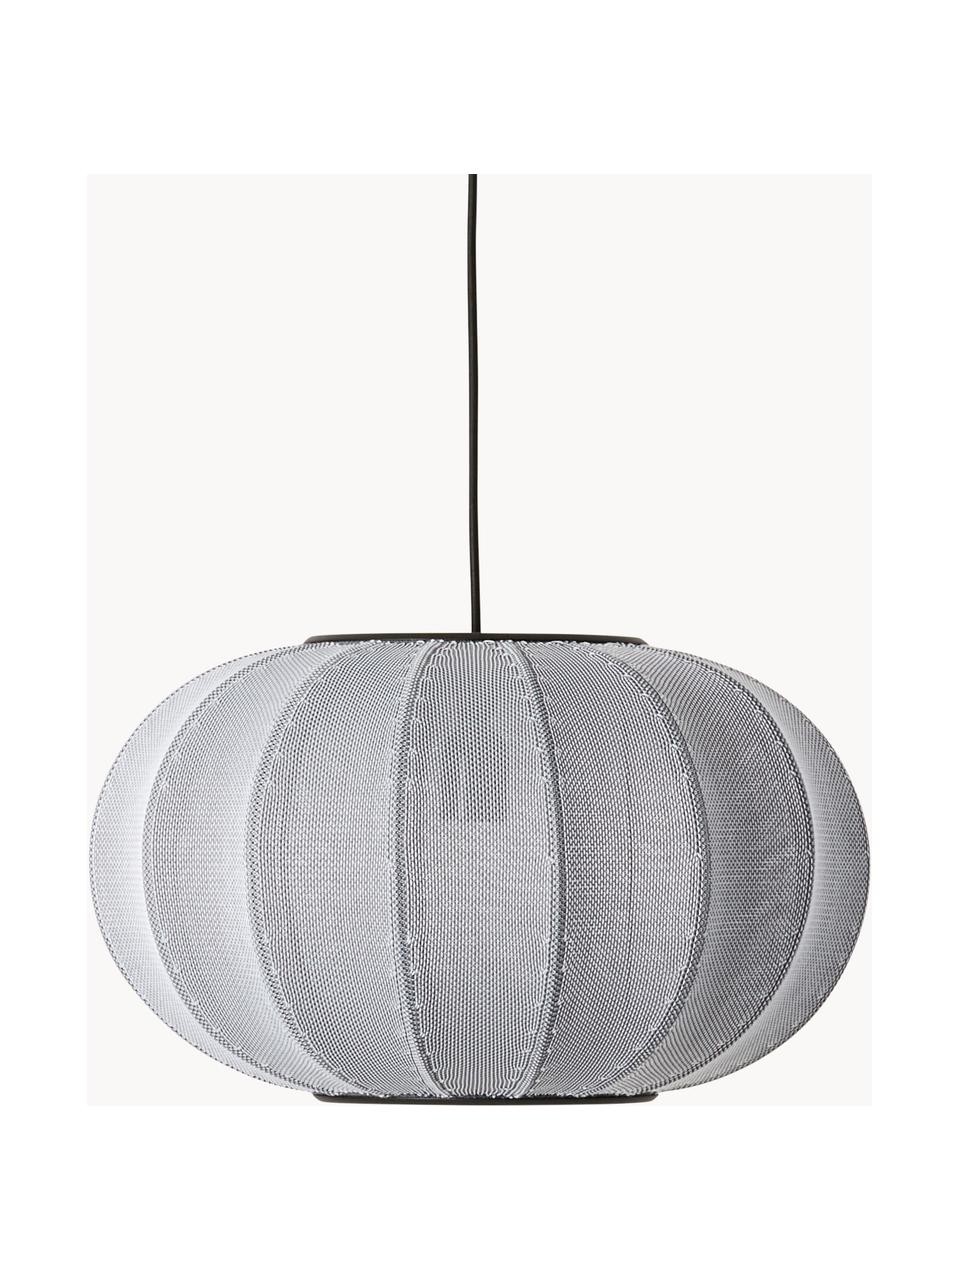 Hanglamp Knit-Wit, Lampenkap: kunstvezel, Decoratie: gecoat metaal, Lichtgrijs, Ø 45 x H 26 cm